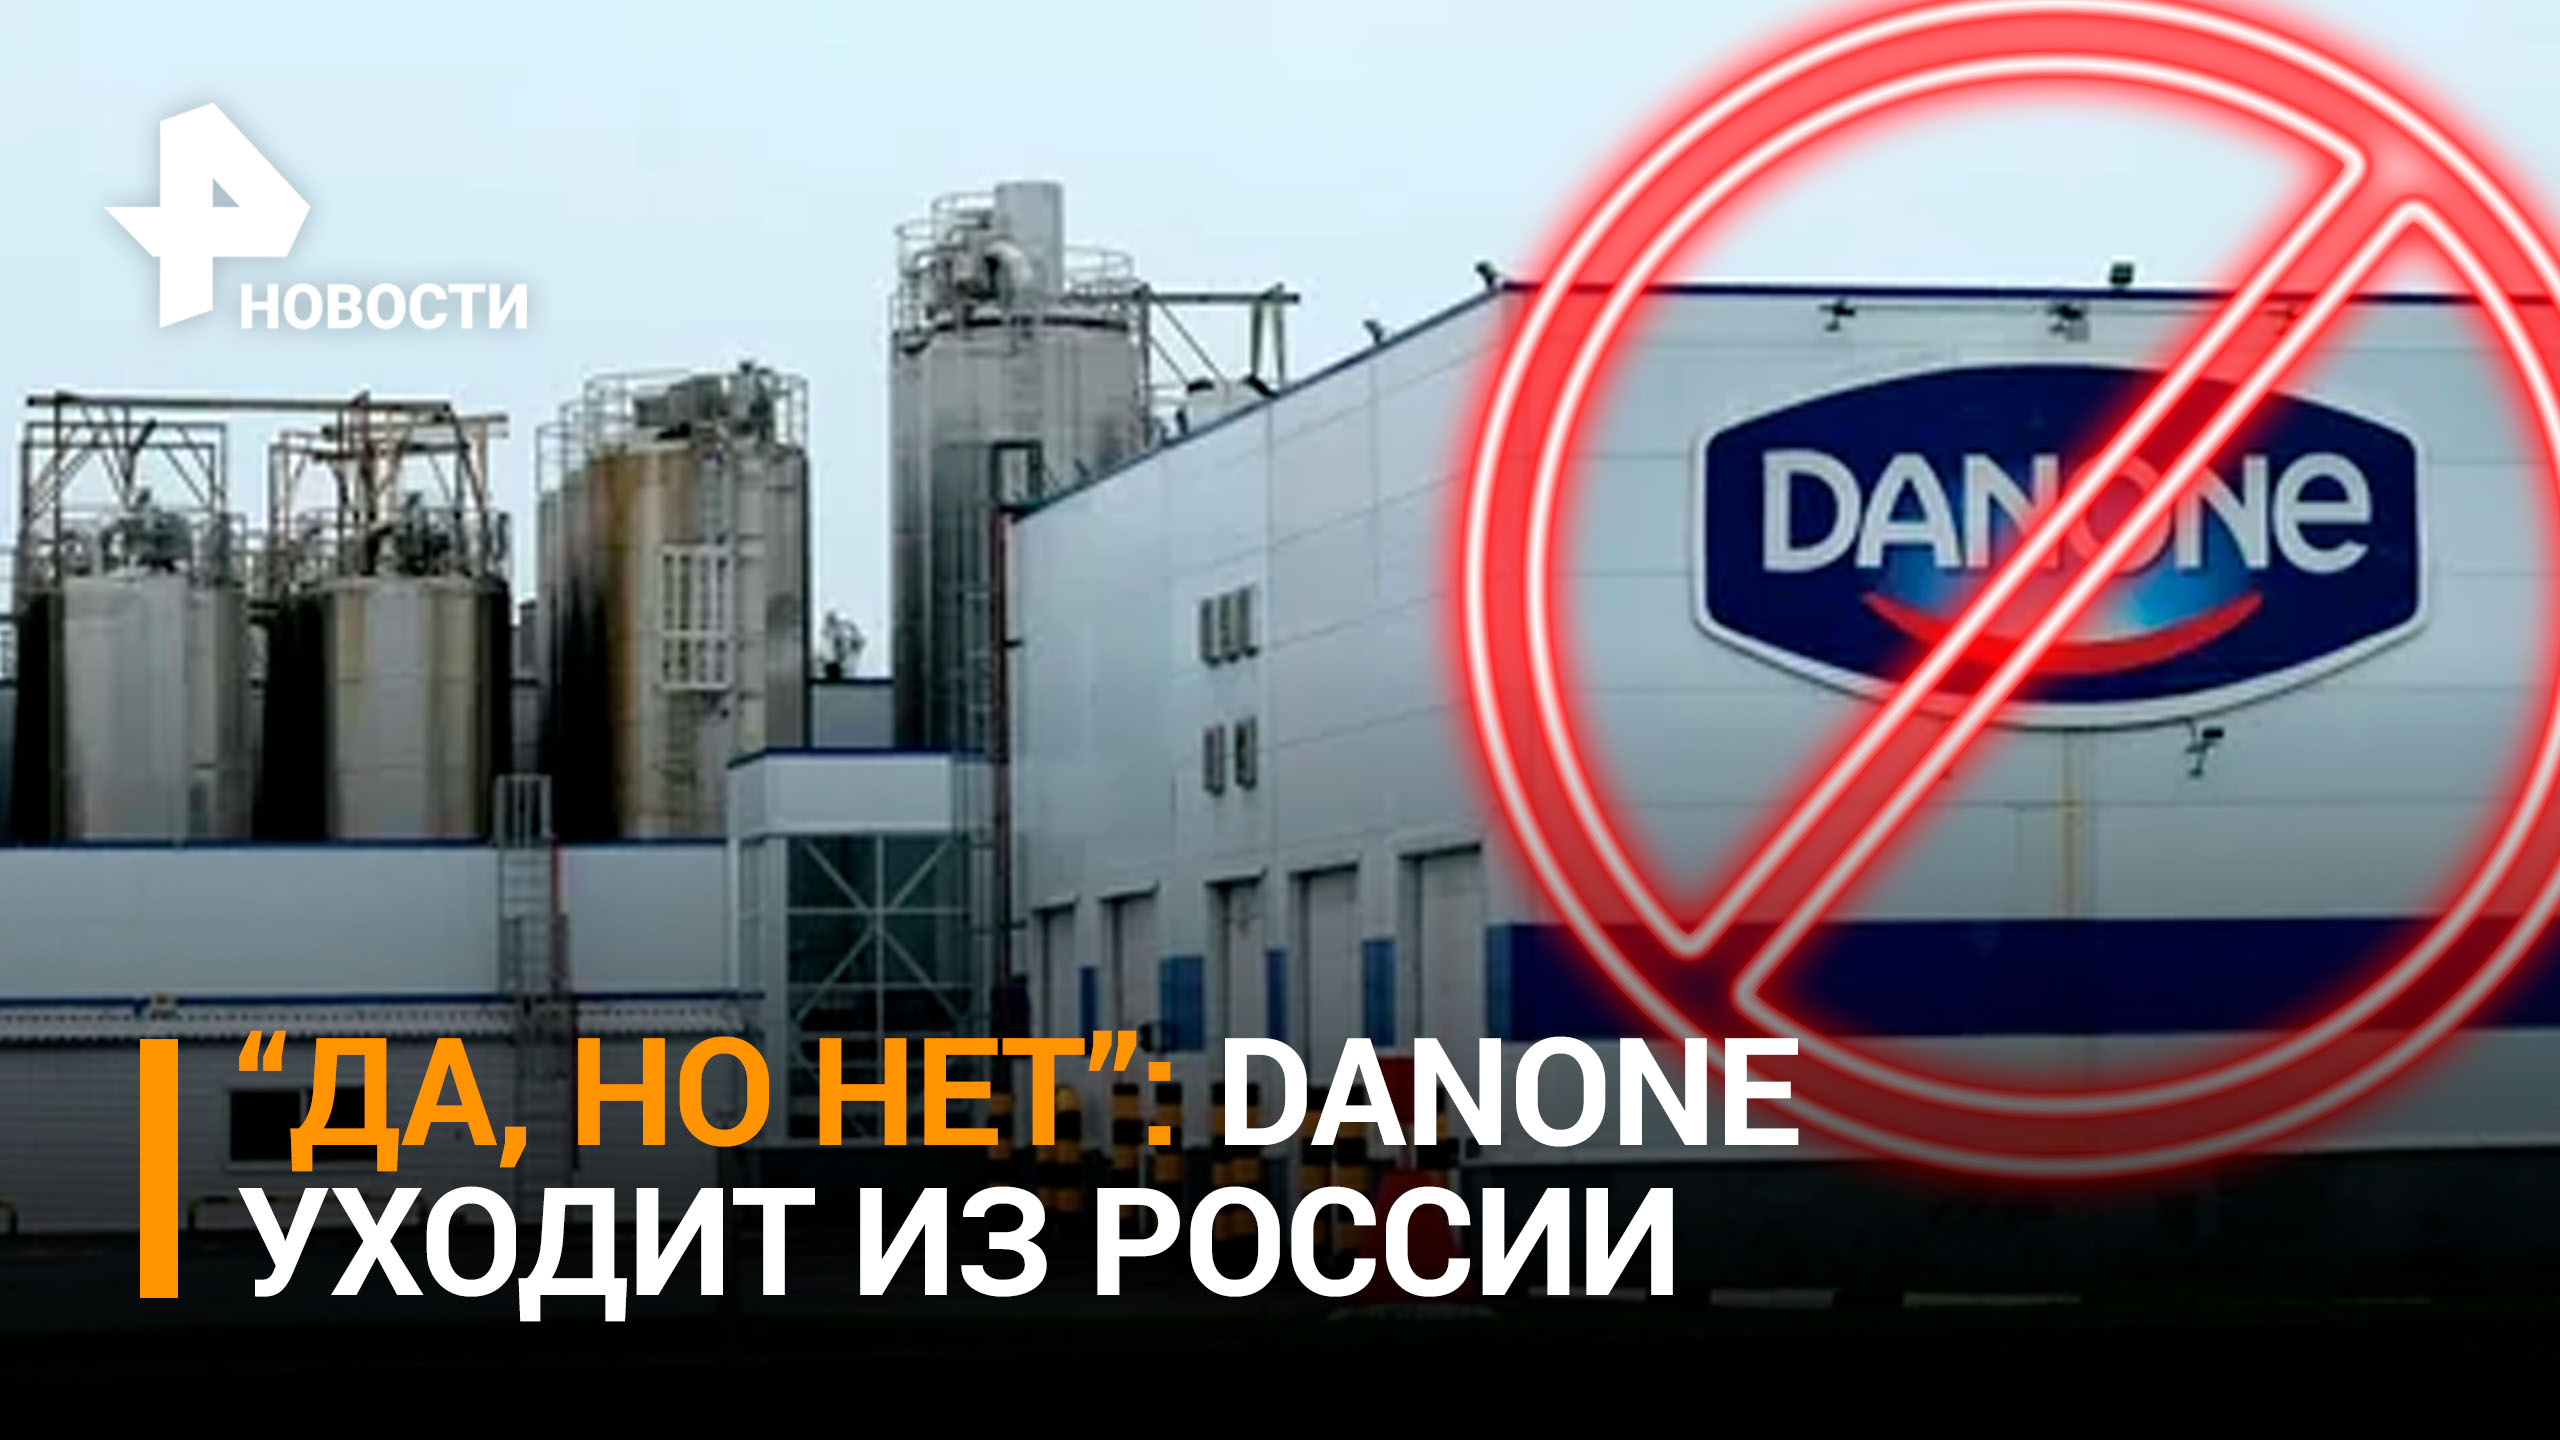 Danone выходит из бизнеса в России, теряя до 1 млрд евро / РЕН Новости